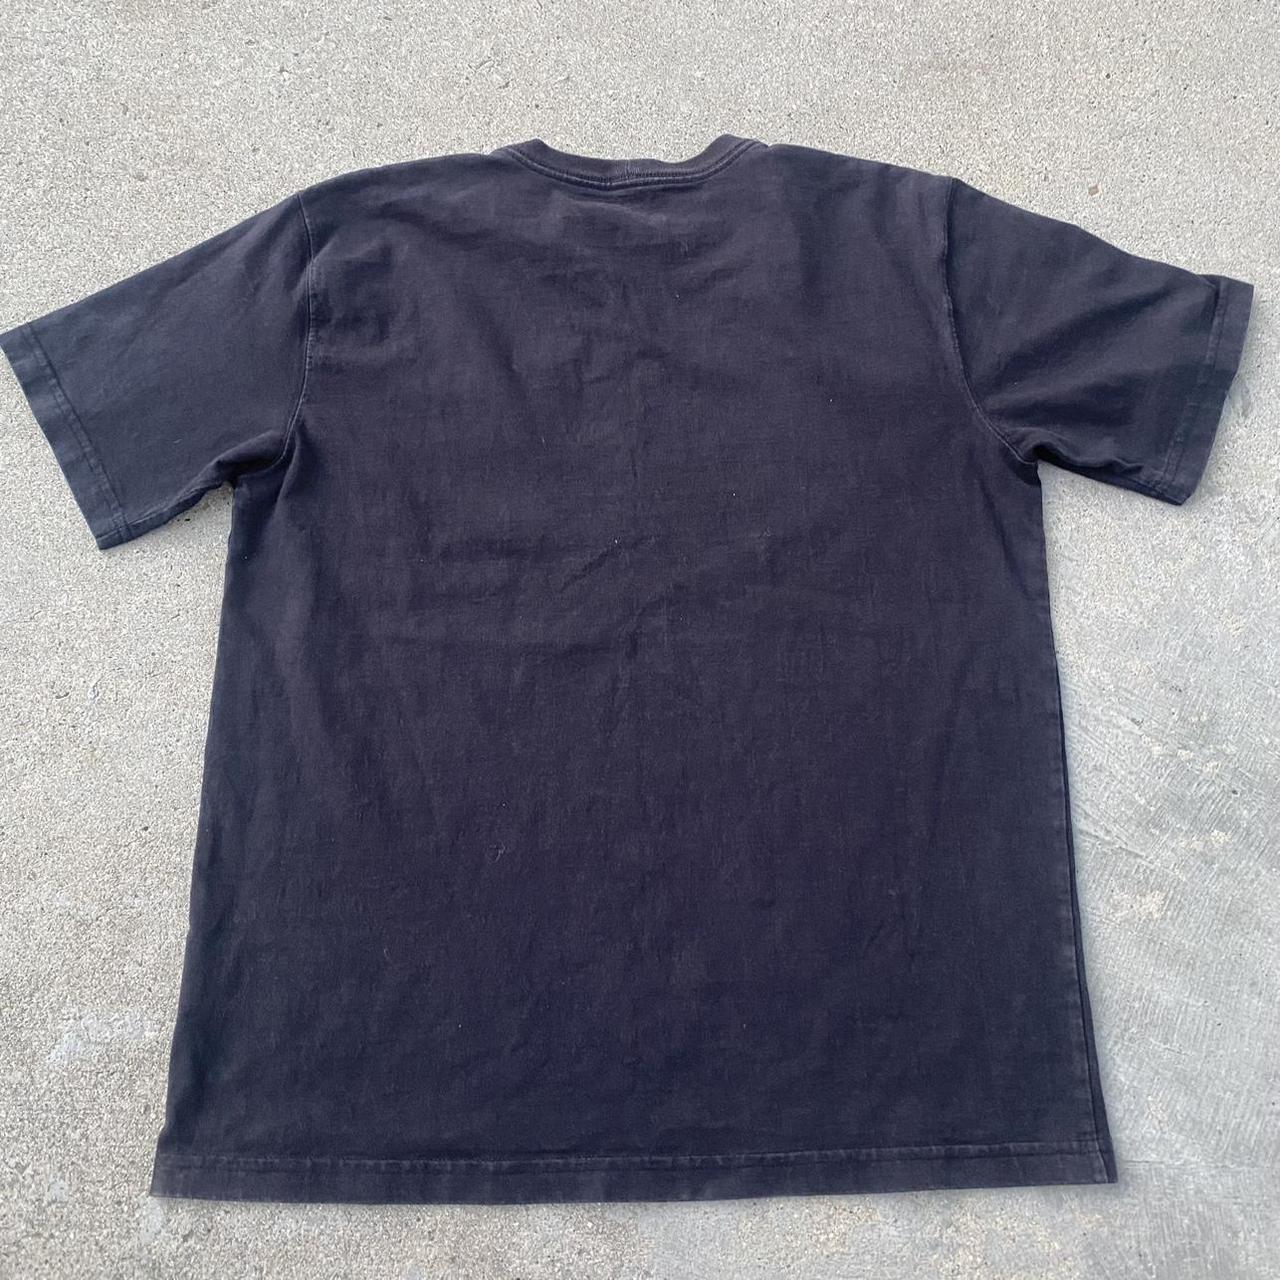 Carhartt work wear tee shirt size M fits a large/... - Depop